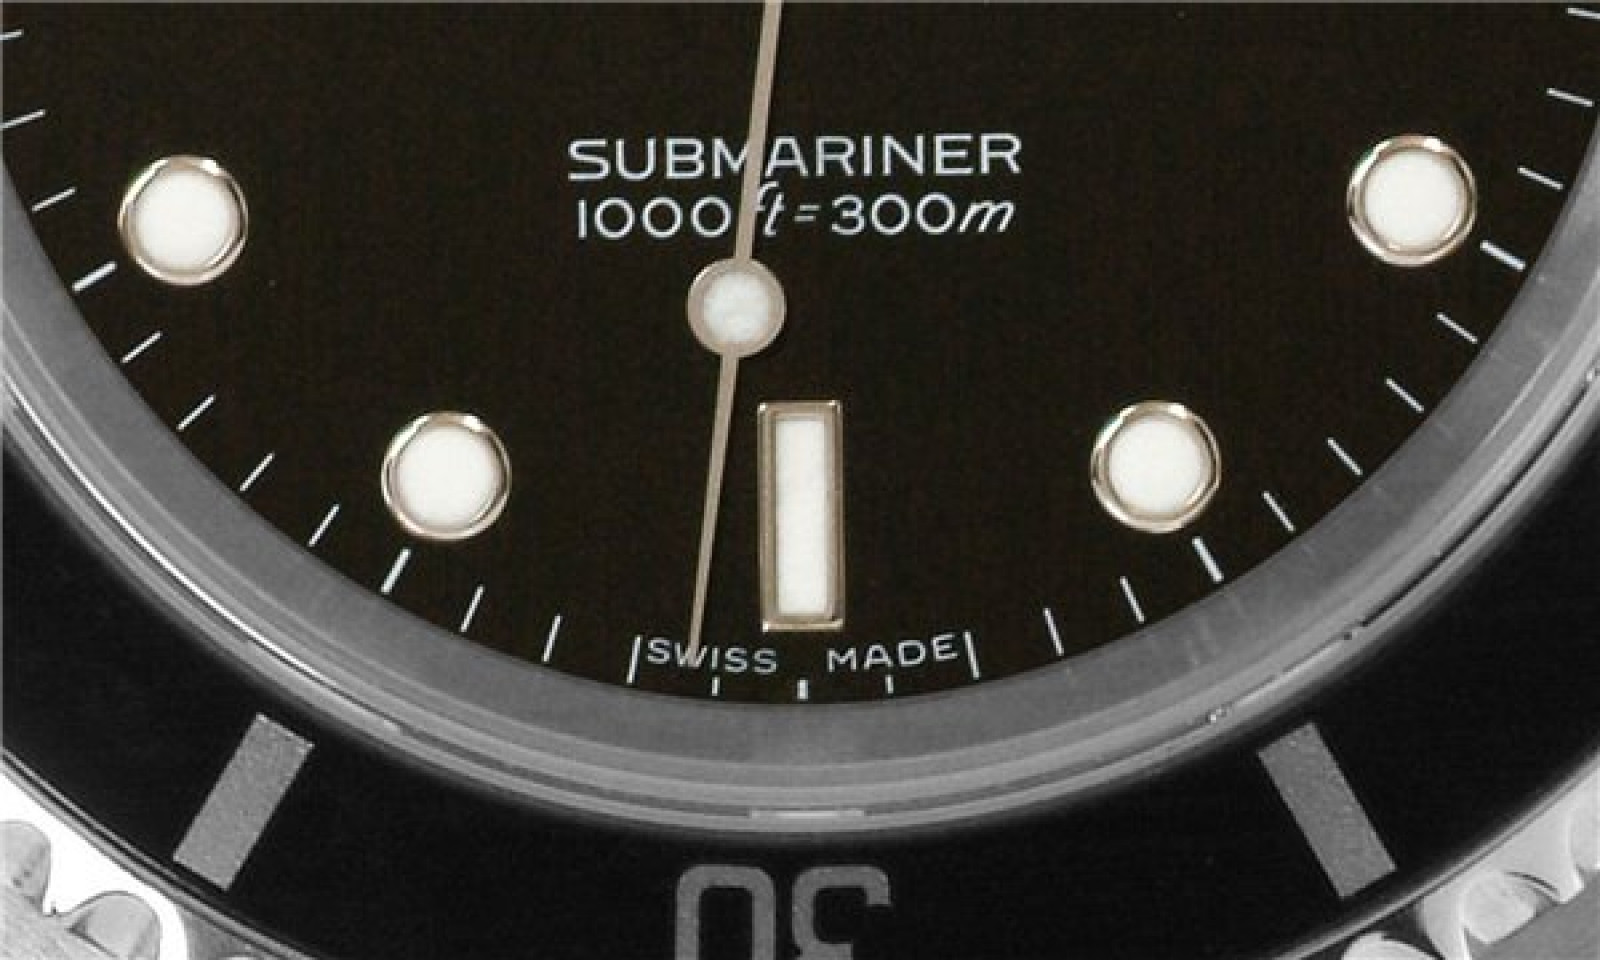 Rolex Submariner 14060M Steel 40 mm